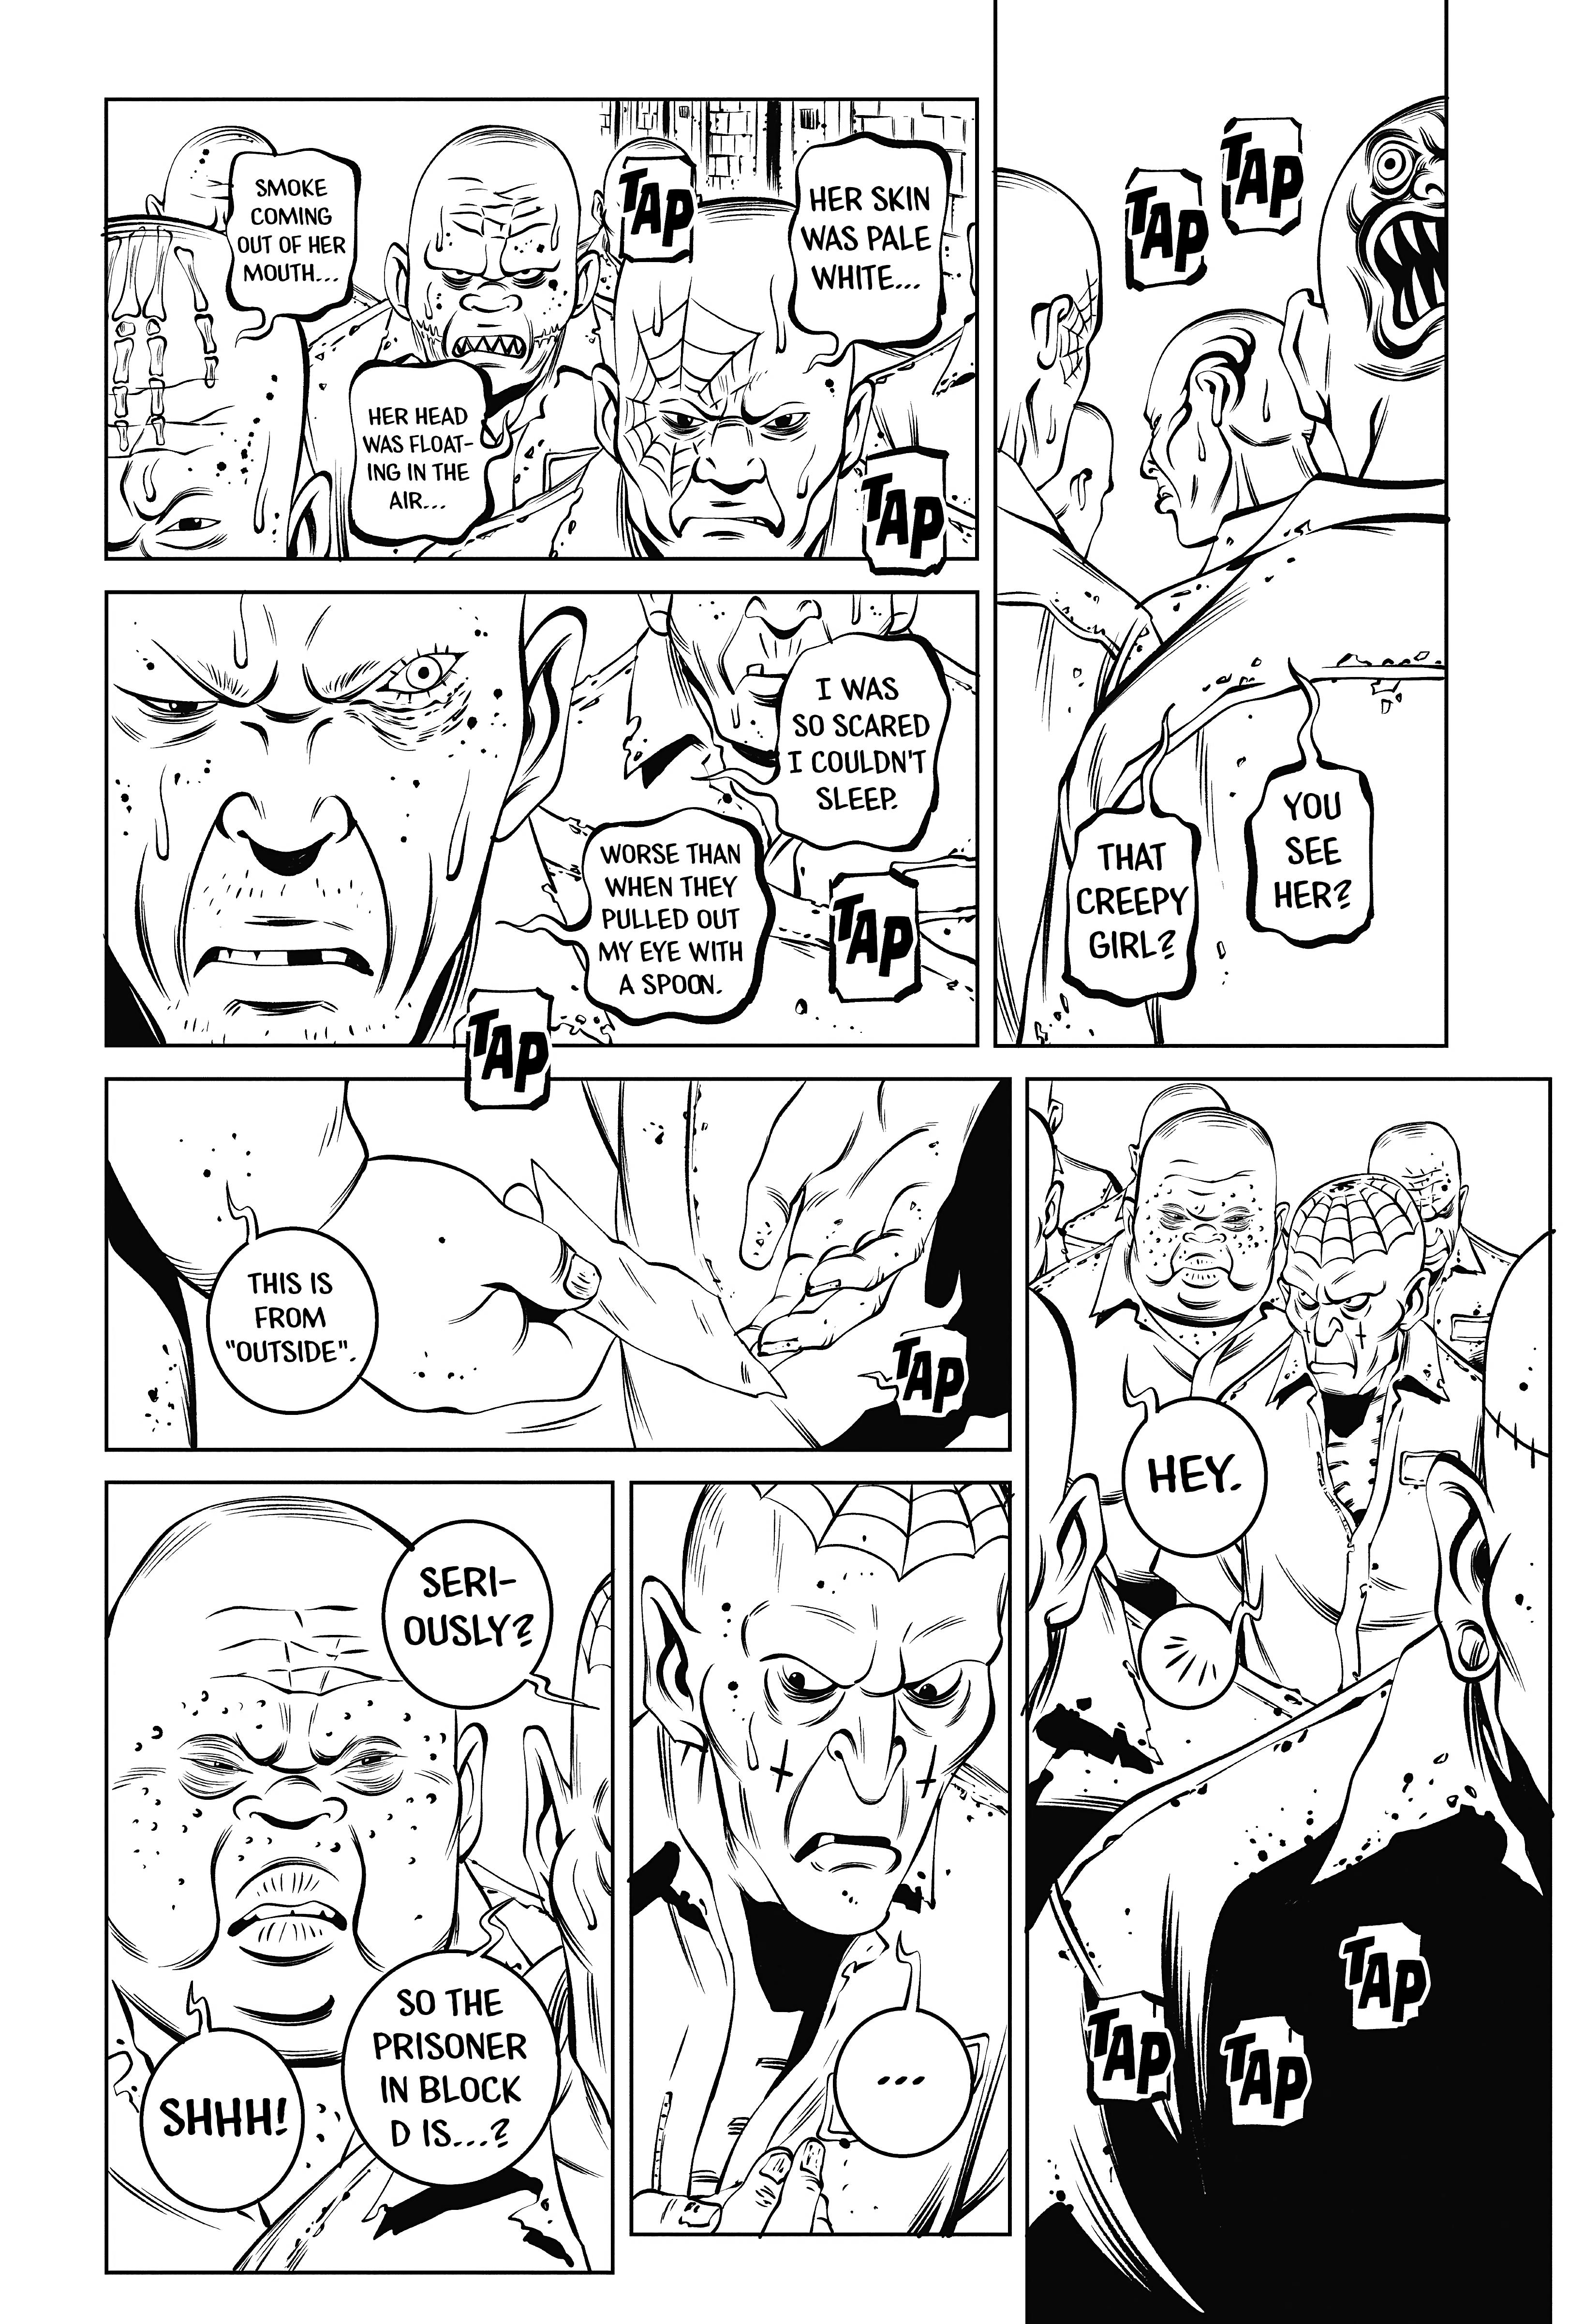 Deathco - Page 2